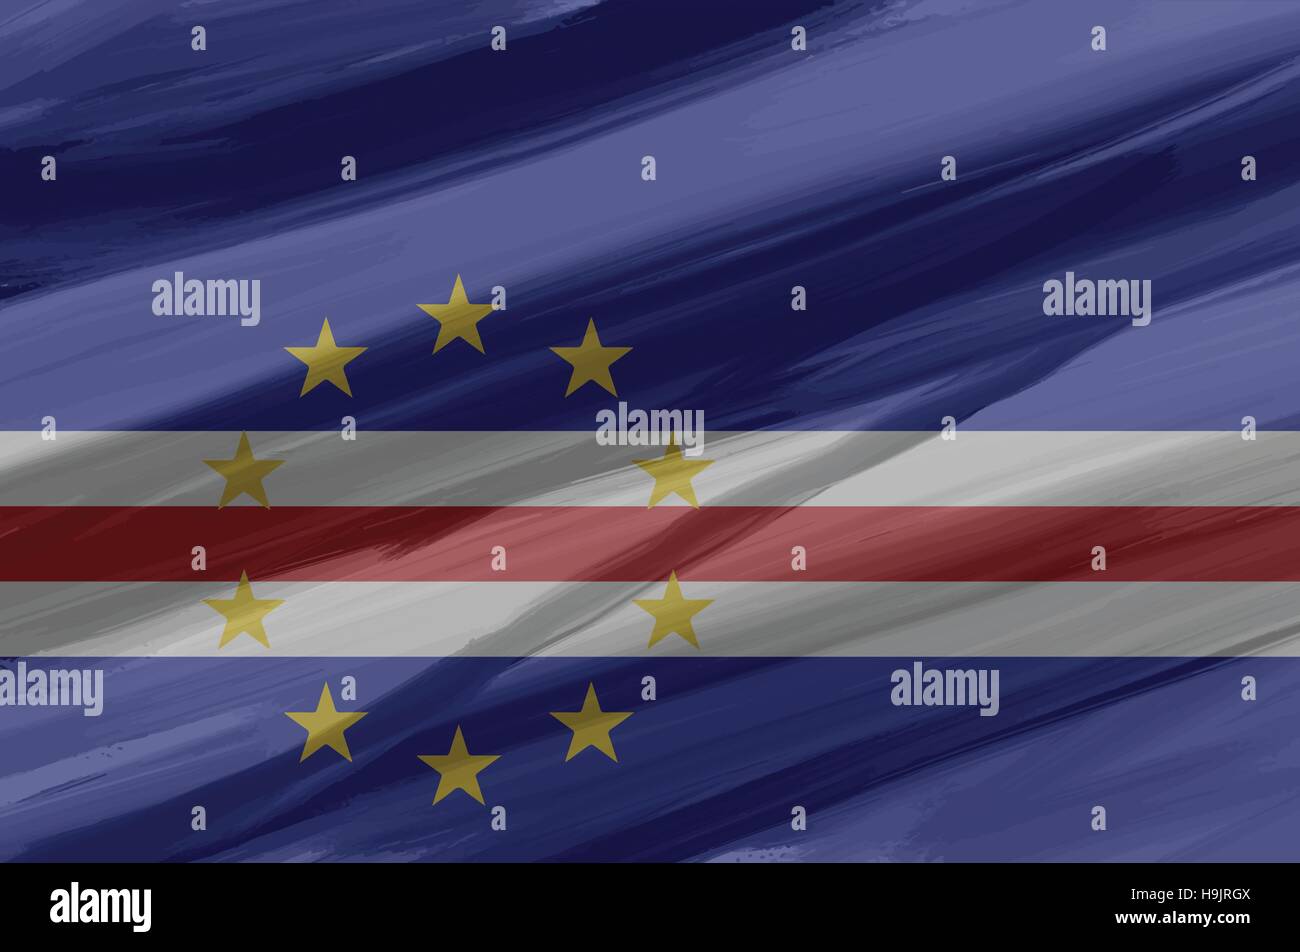 Kap Verde bemalt / gezeichnete Vektor Flagge. Dramatische, ungewöhnliche Optik. Vektor-Datei enthält Flagge und Textur-Layer Stock Vektor